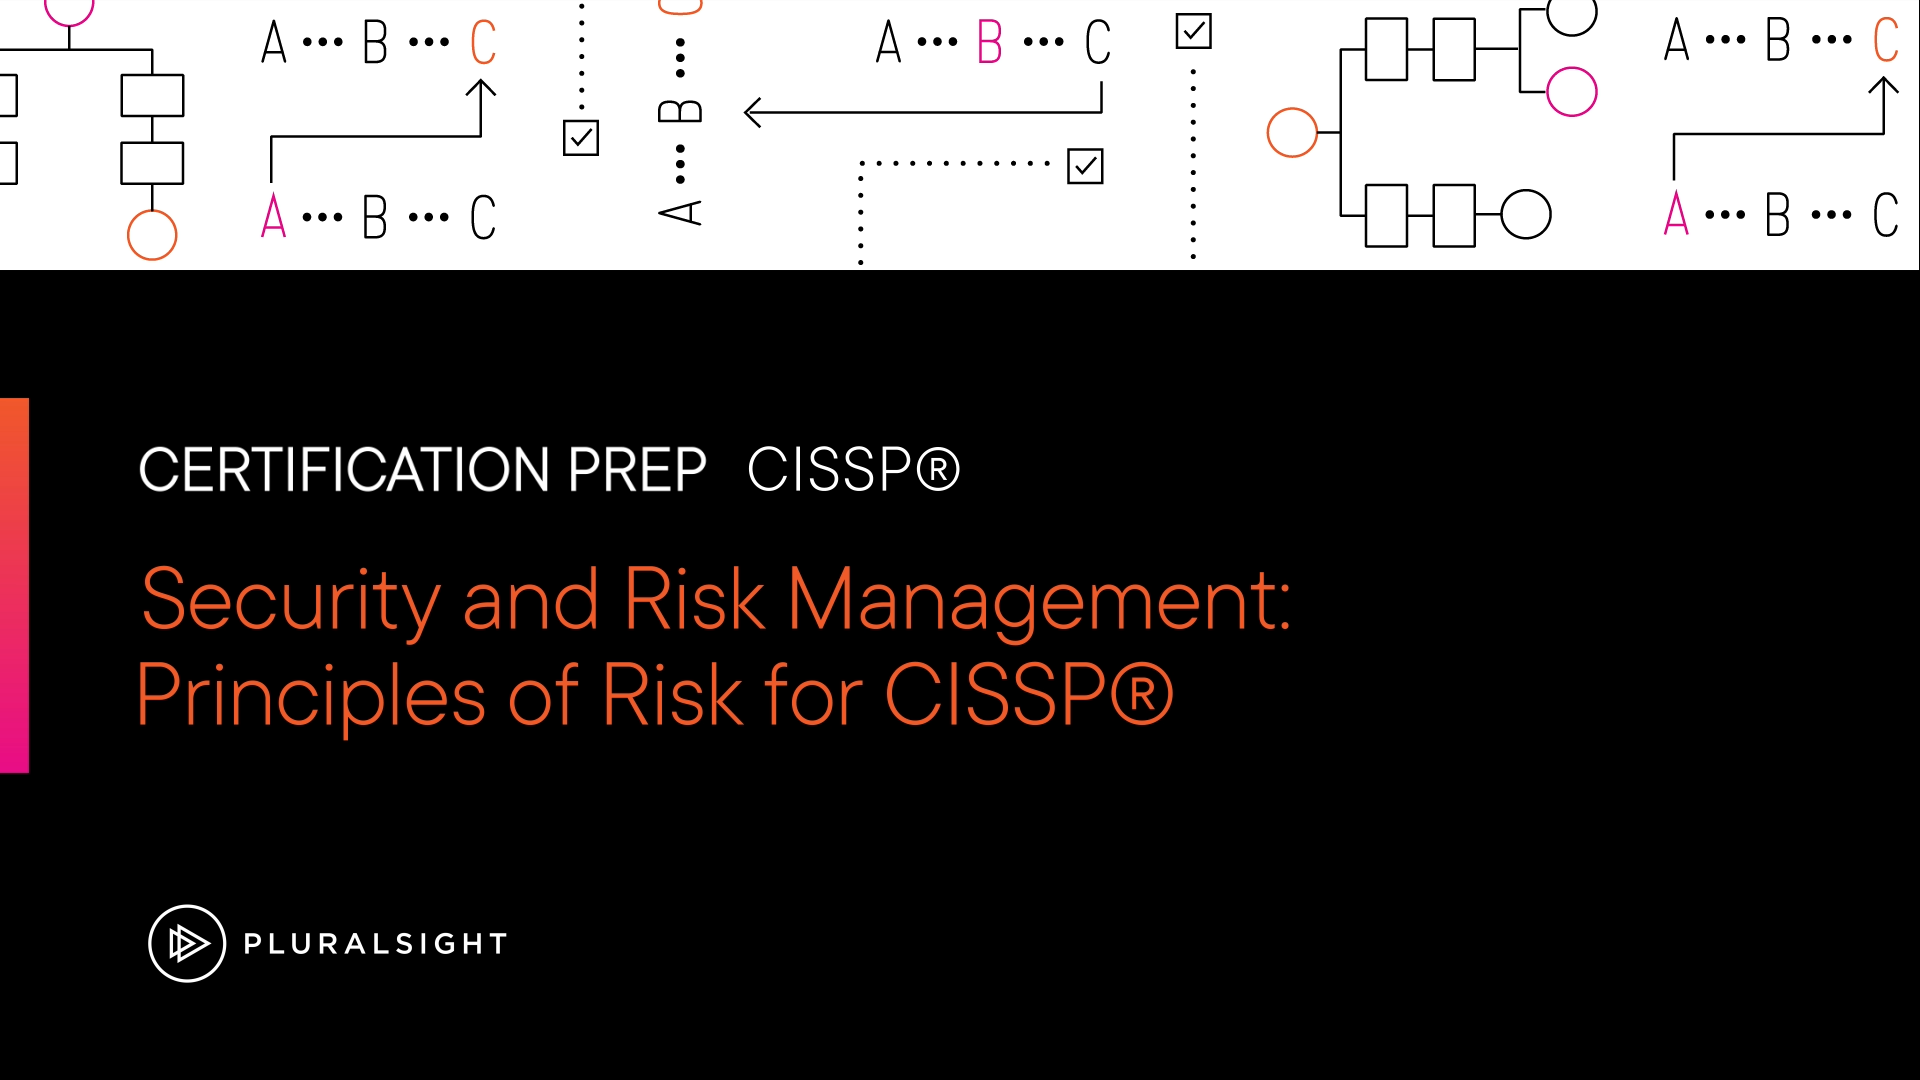 آموزش امنیت و مدیریت ریسک: اصول ریسک برای CISSP®